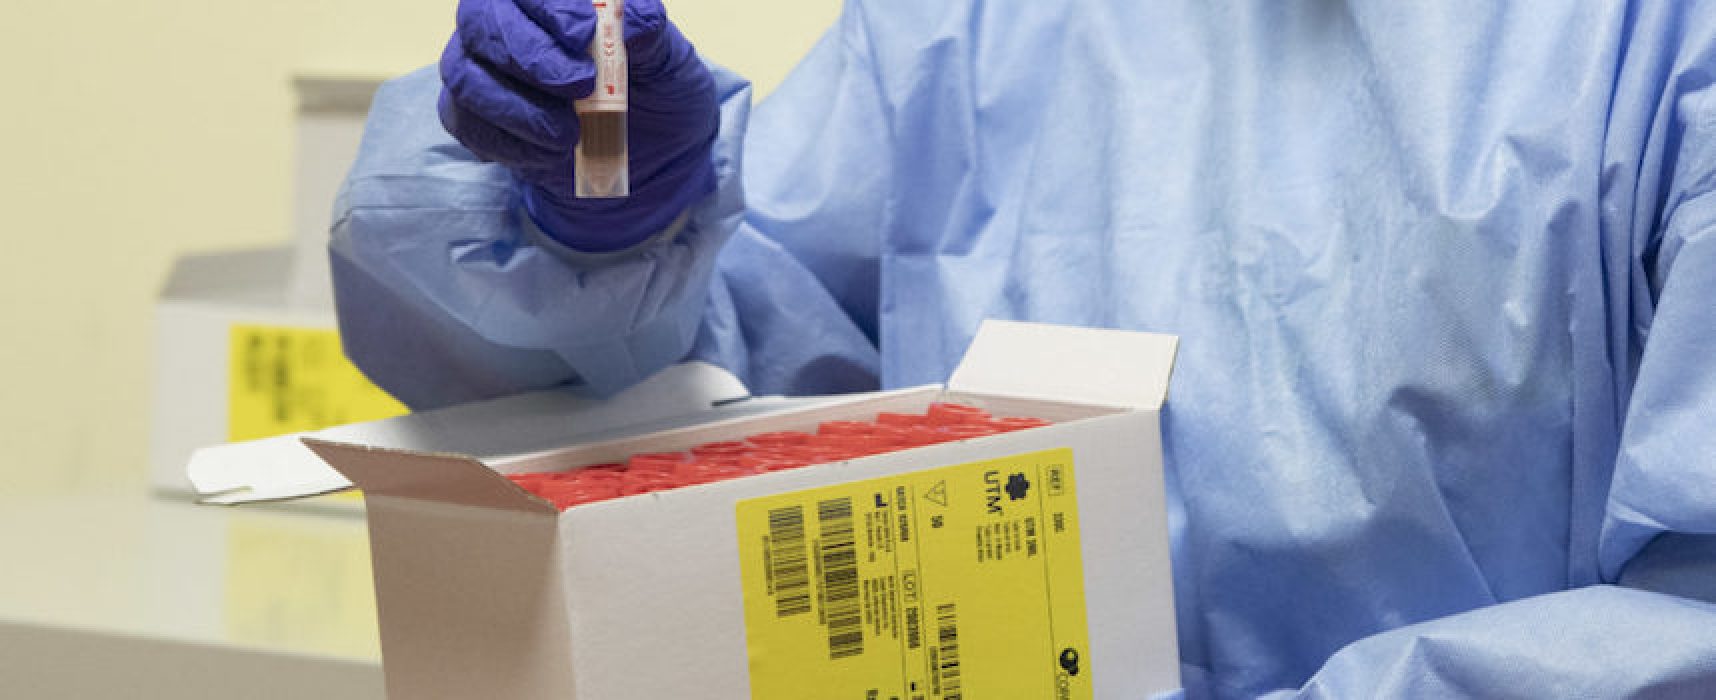 Aggiornamento Coronavirus: ancora nessun nuovo caso nella Bat, ma si registra un decesso